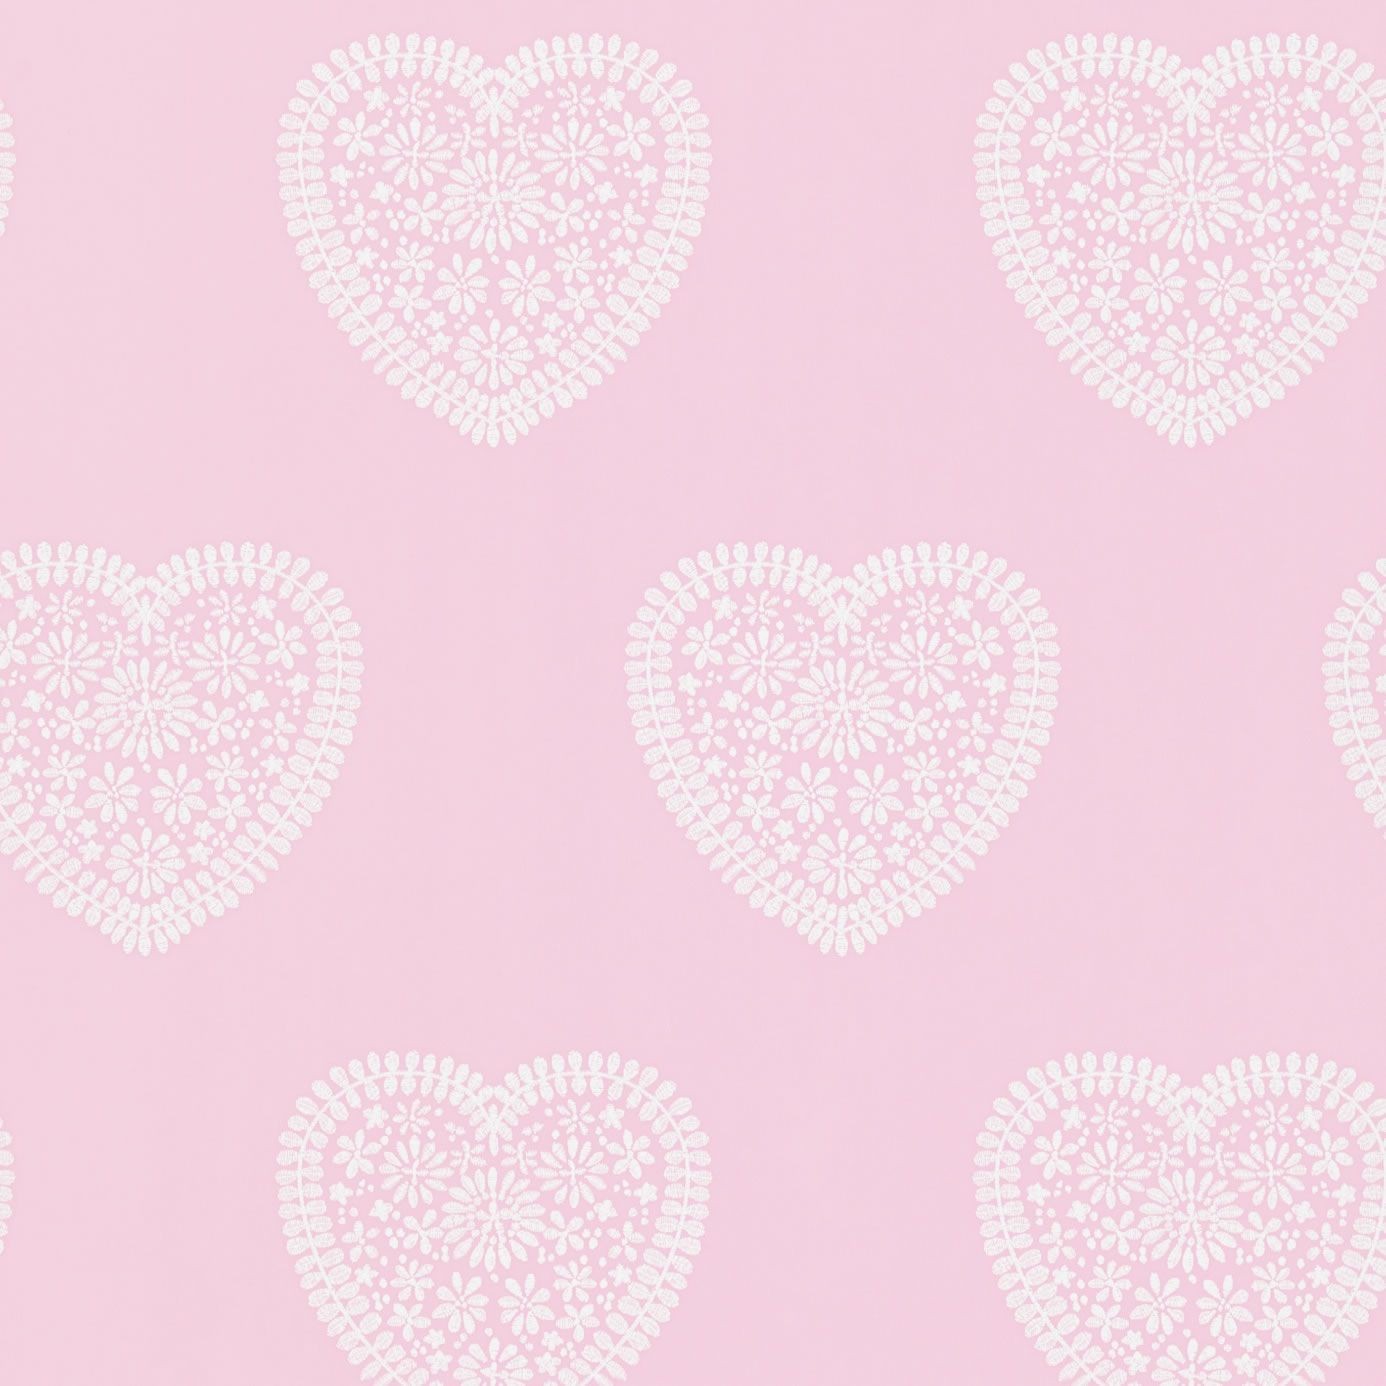 Soft Pink Wallpaper